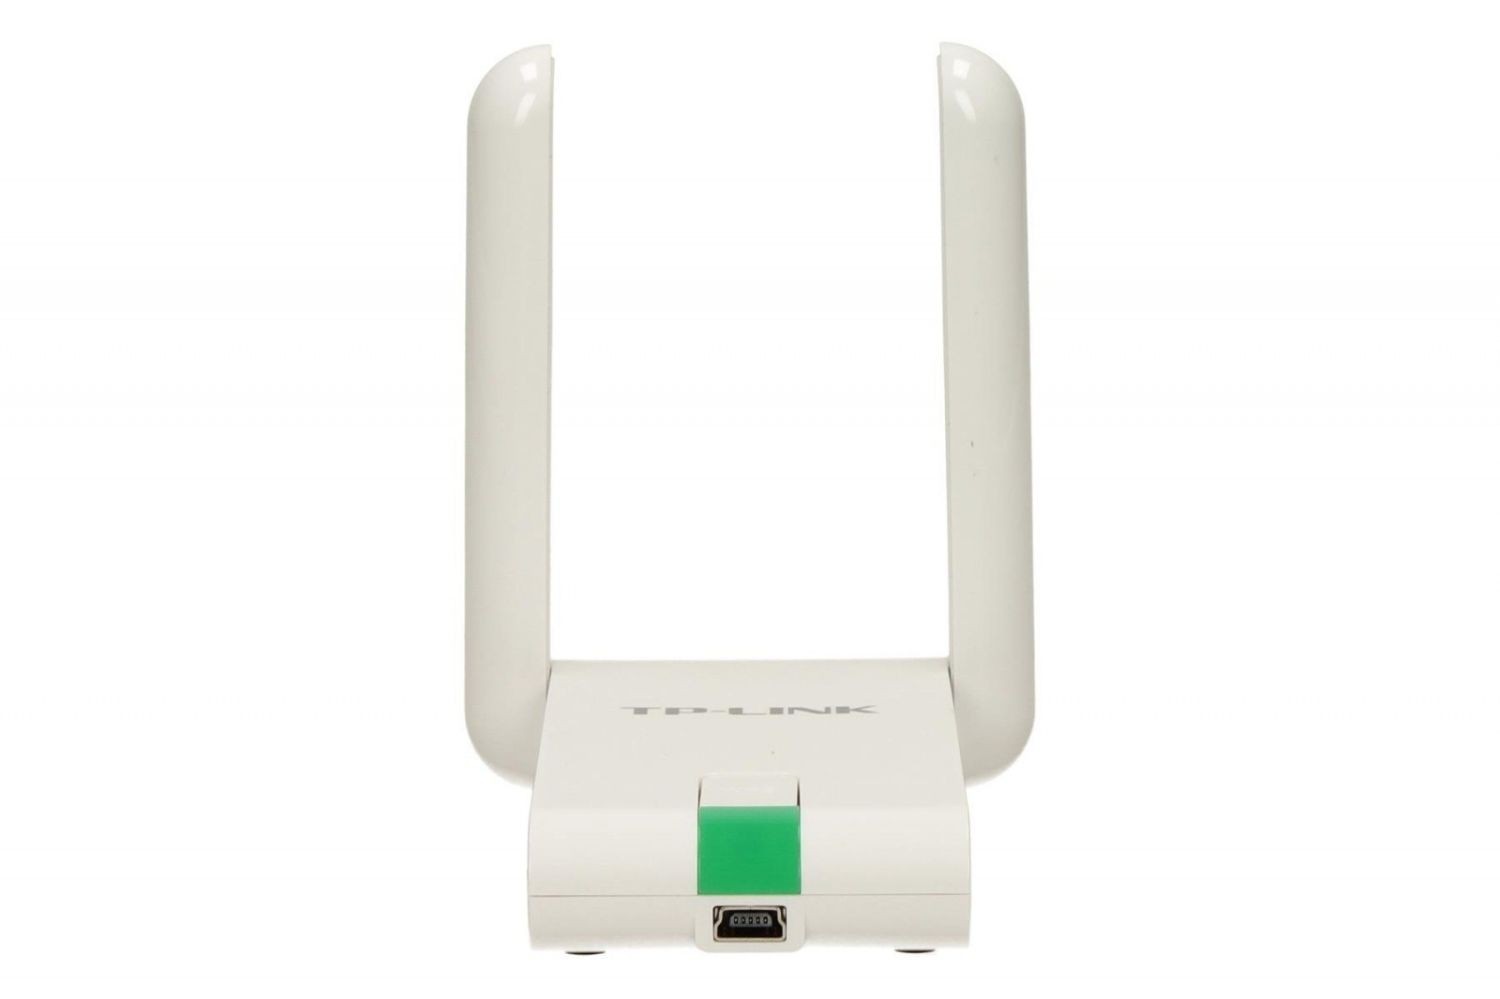 TP-Link WN822N karta WiFi N300 (2.4GHz) USB 2.0 (kabel 1.5m) 2x3dBi